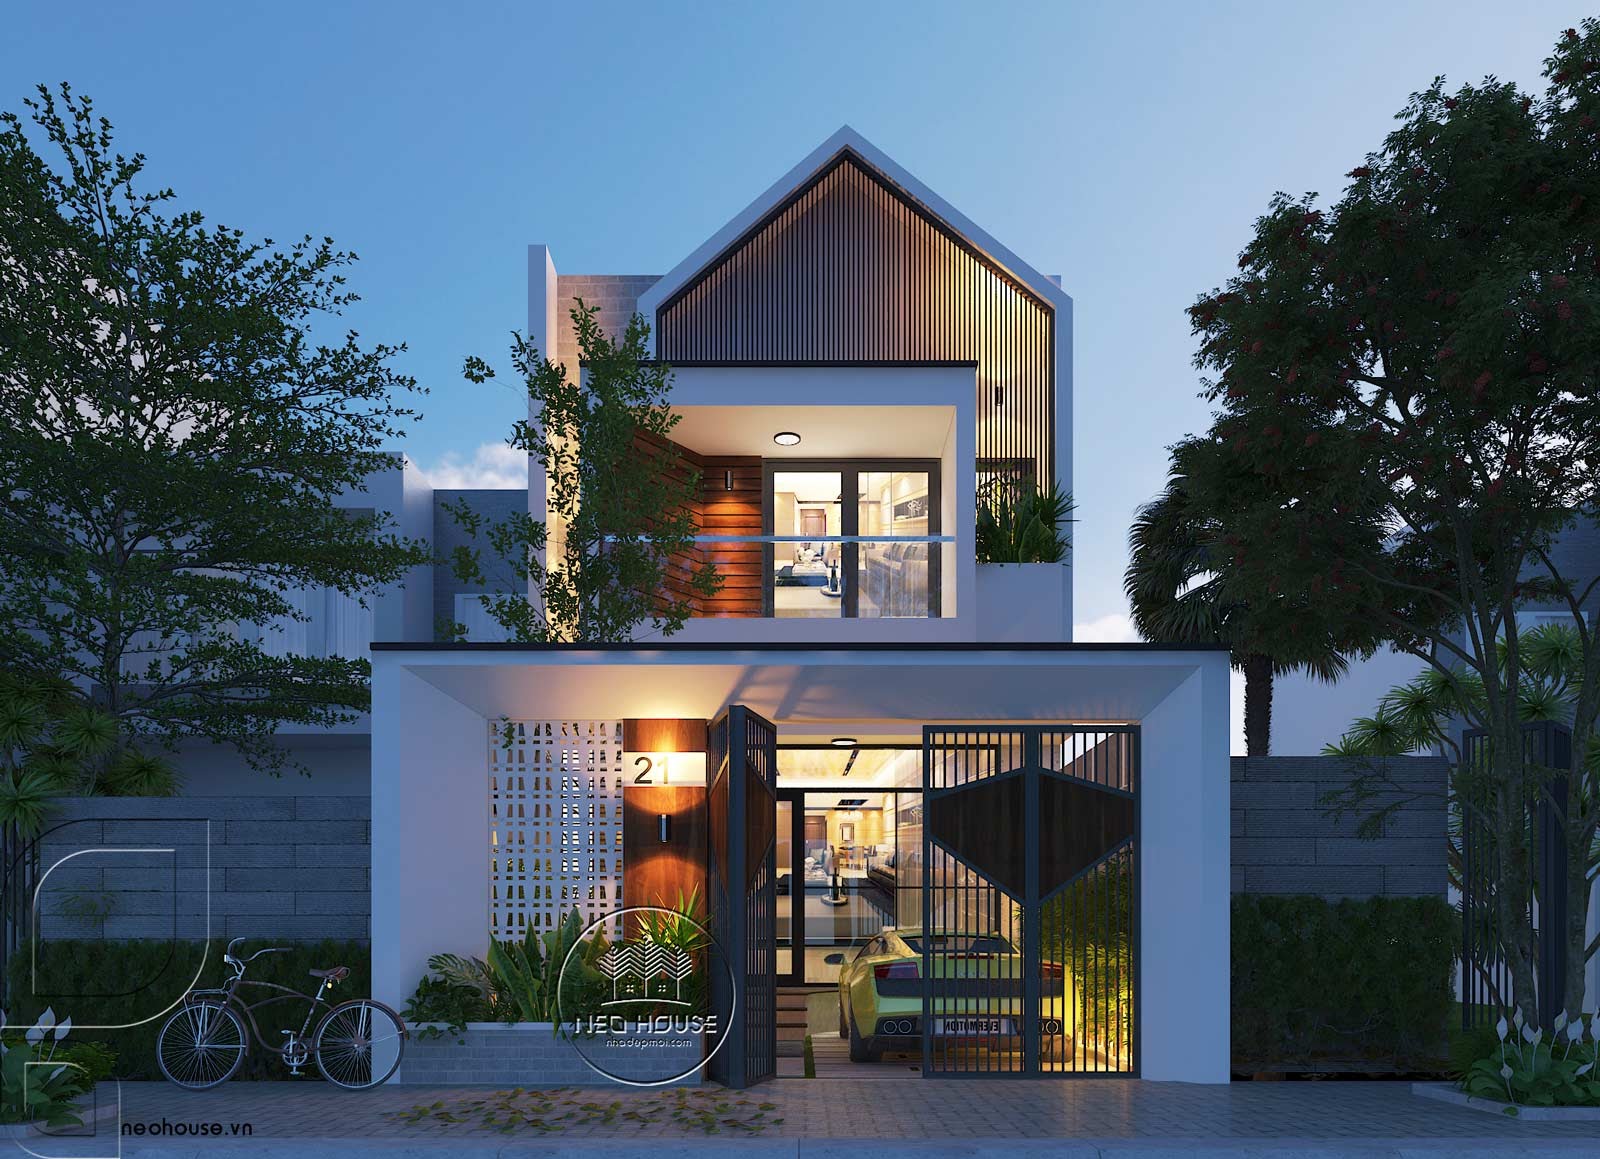 35 Mẫu thiết kế nhà 2 tầng đơn giản đẹp hiện đại